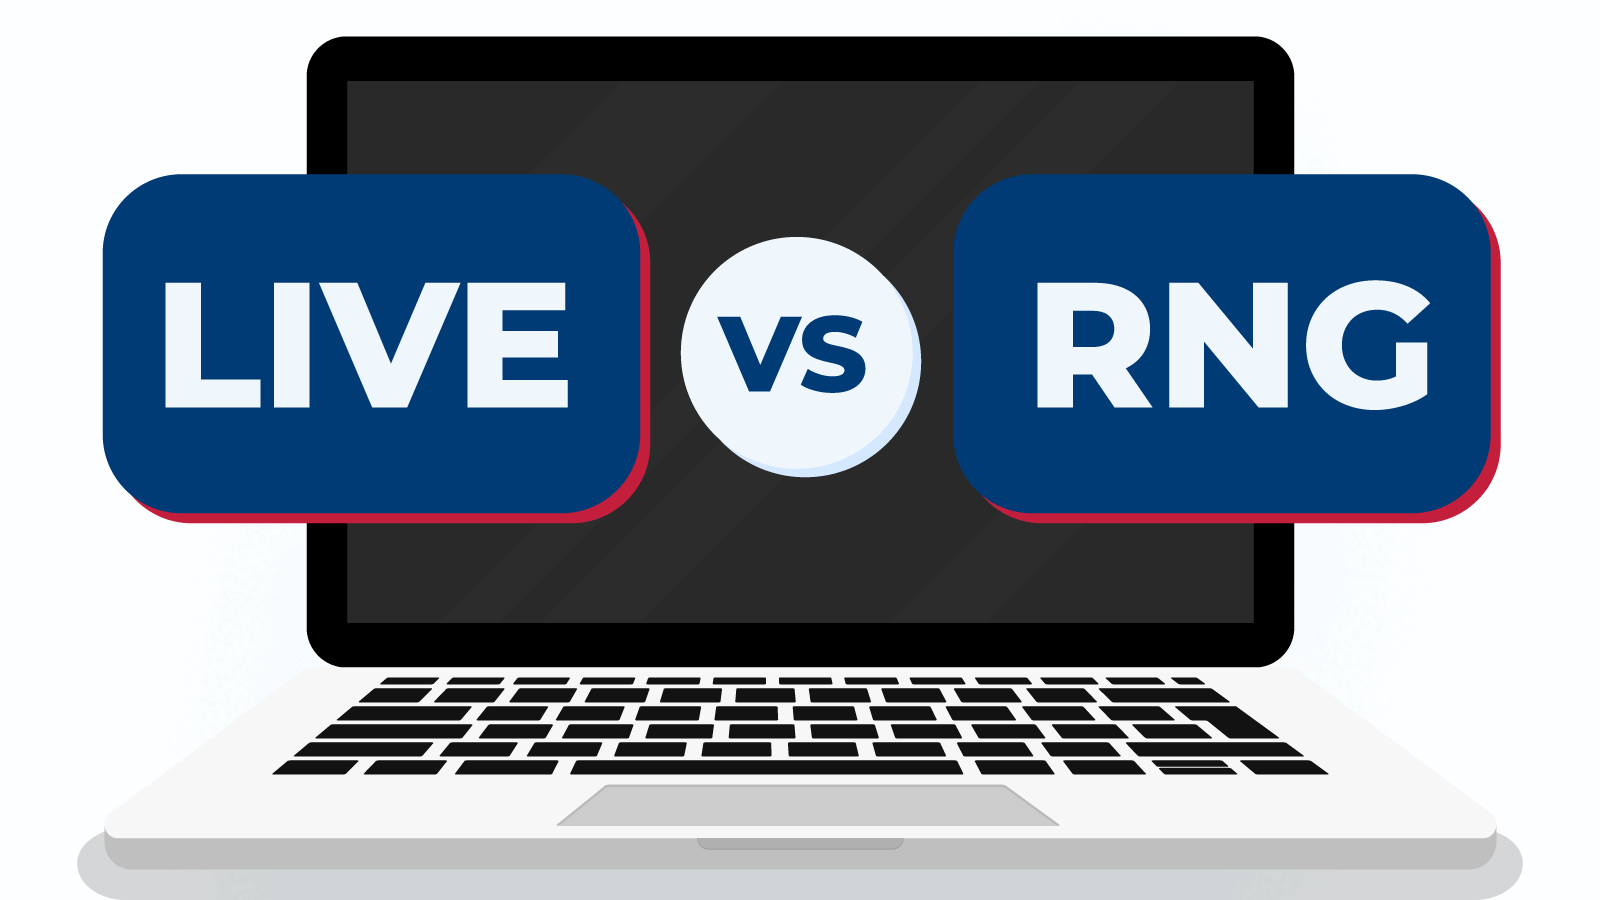 Jogos ao vivo vs RNG (mesa virtual)